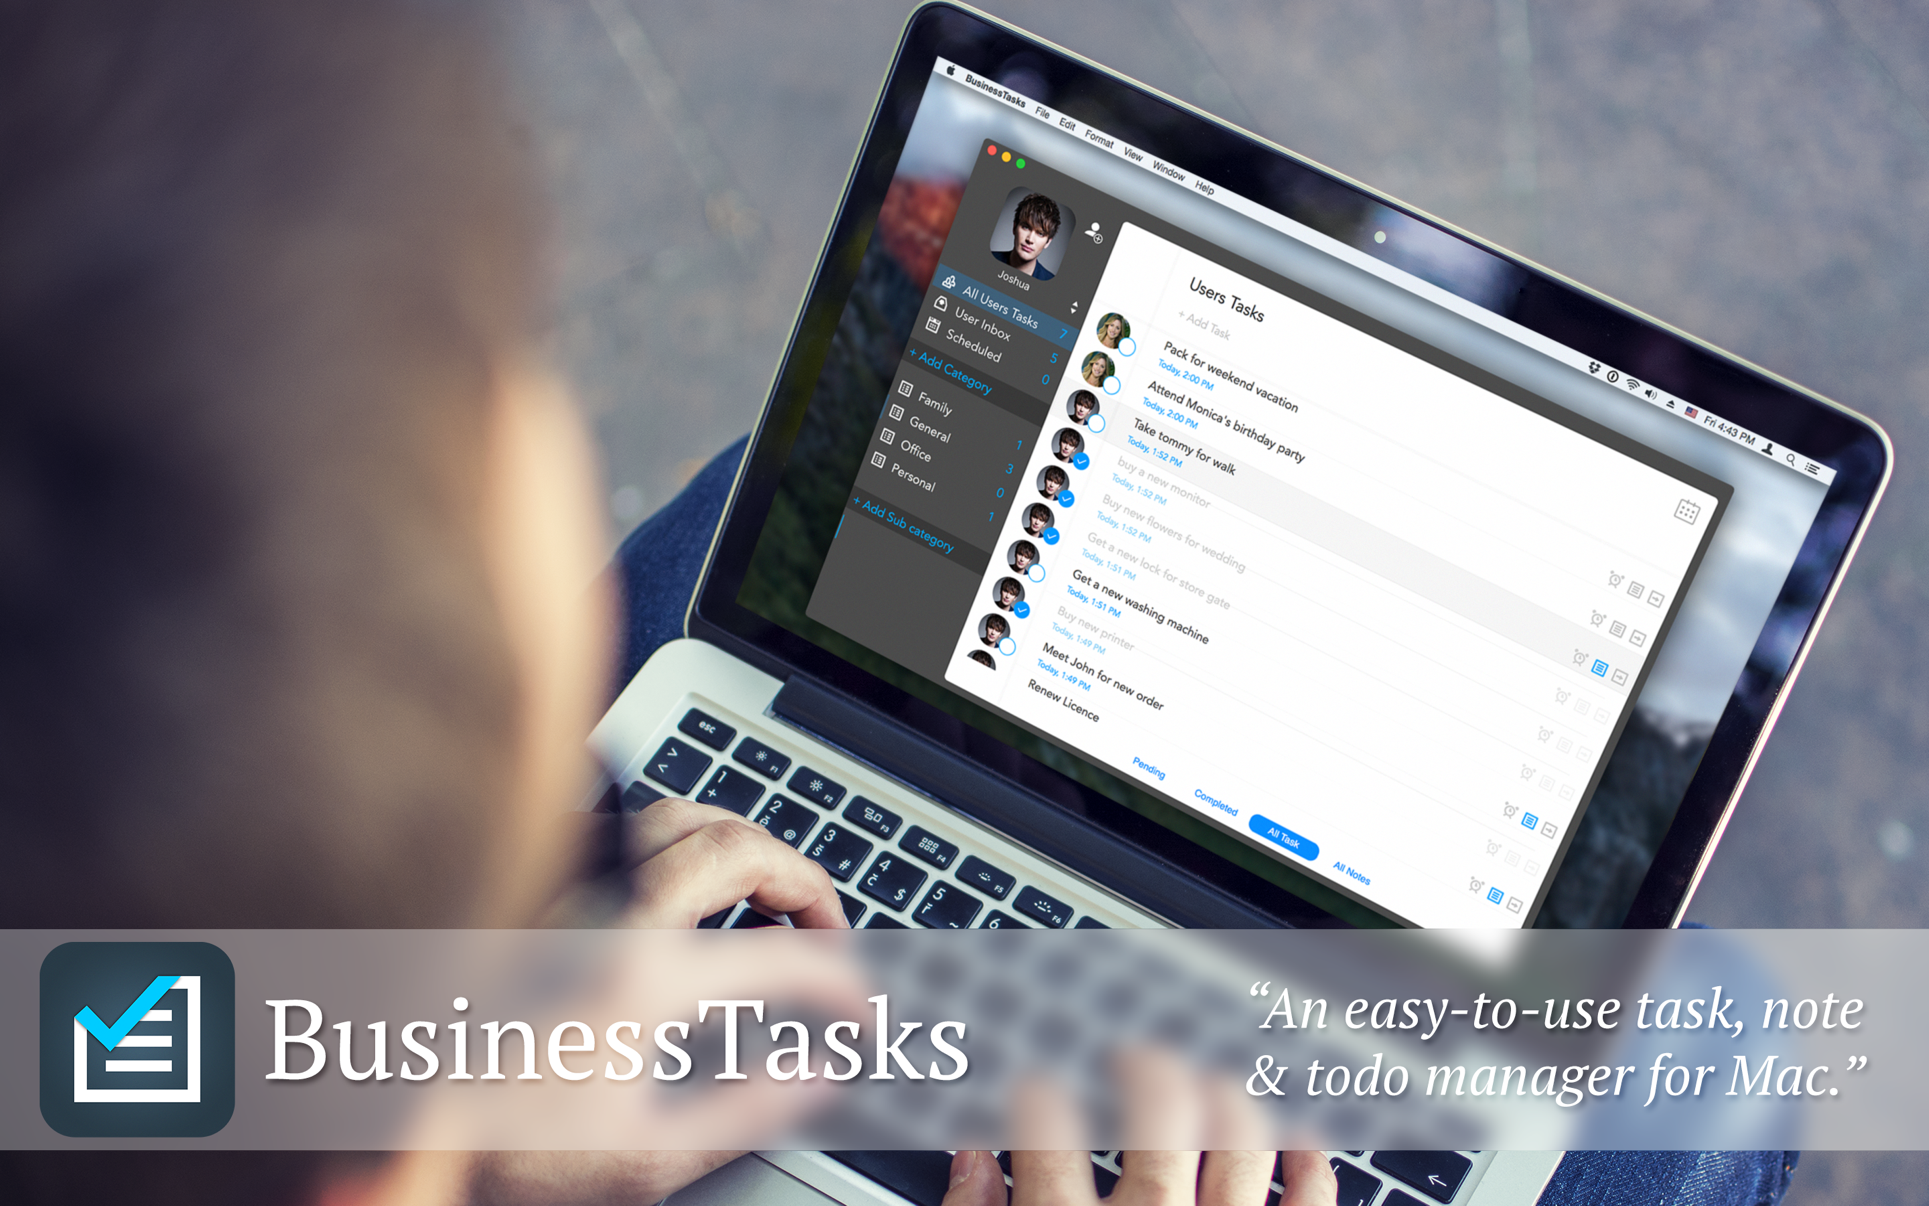 BusinessTasks - Tasks, Notes